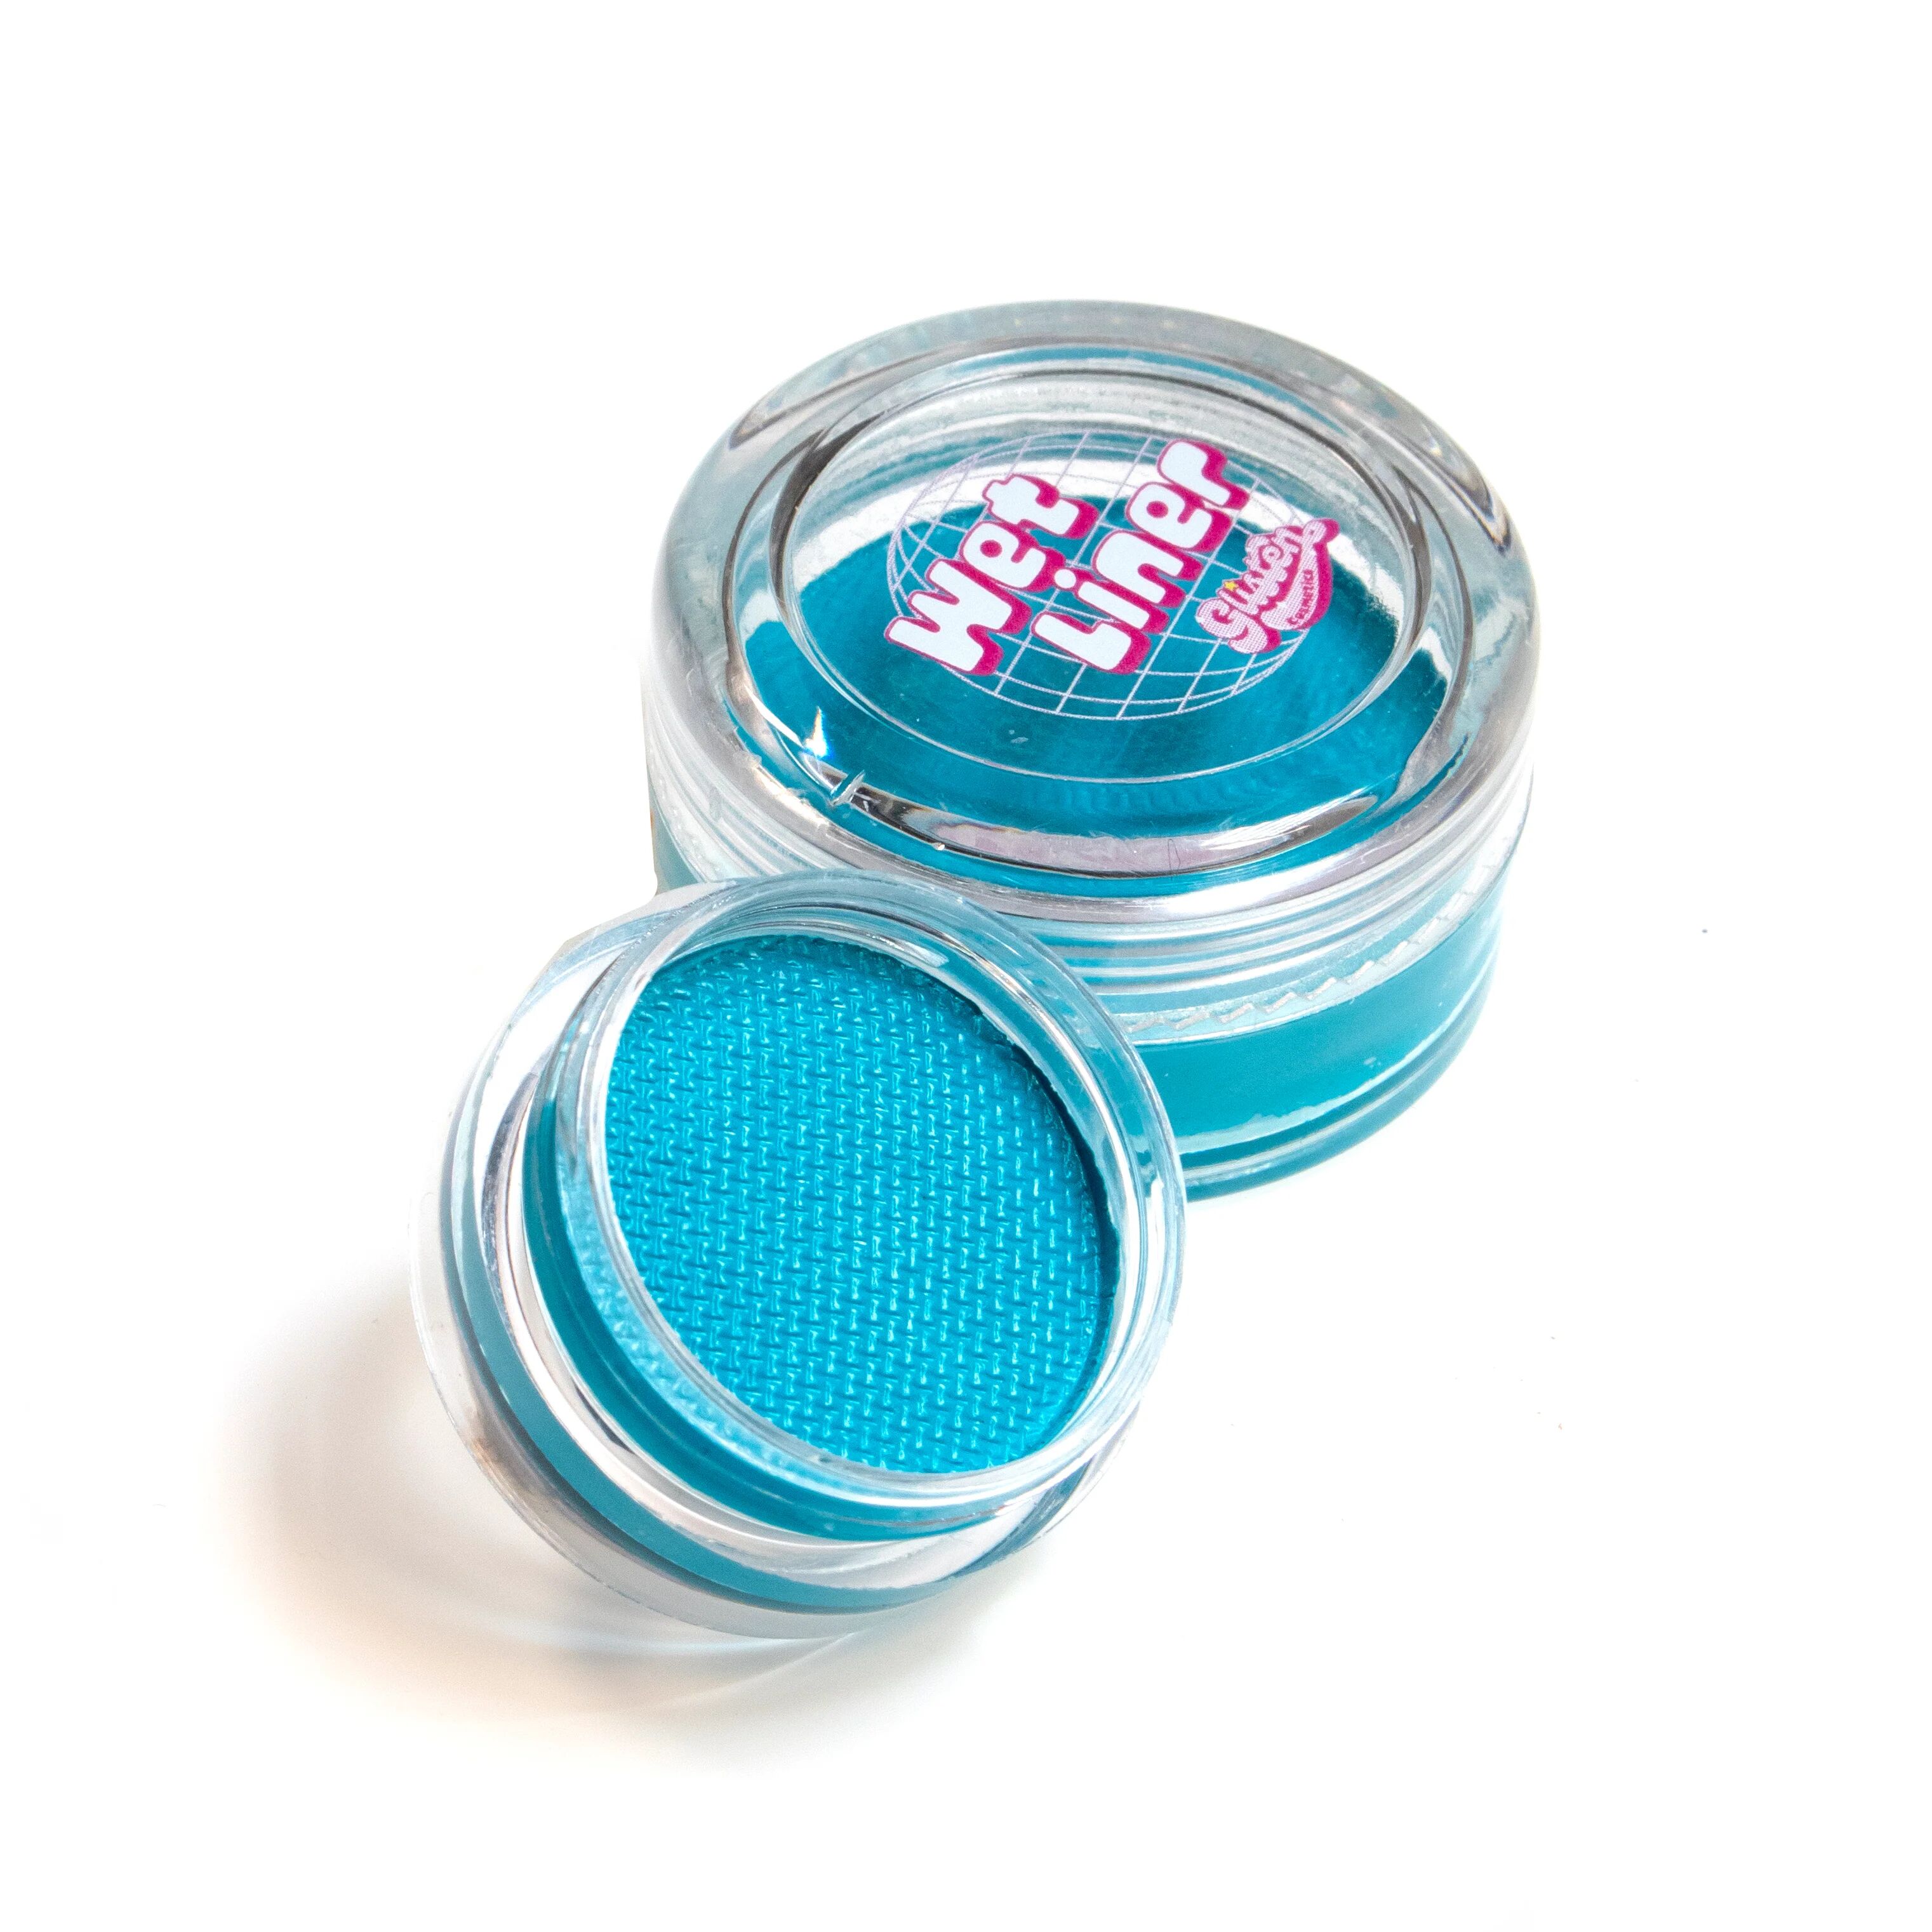 Aqua (Aqua Blue) Wet Liner® - Eyeliner - Glisten Cosmetics Small - 3g